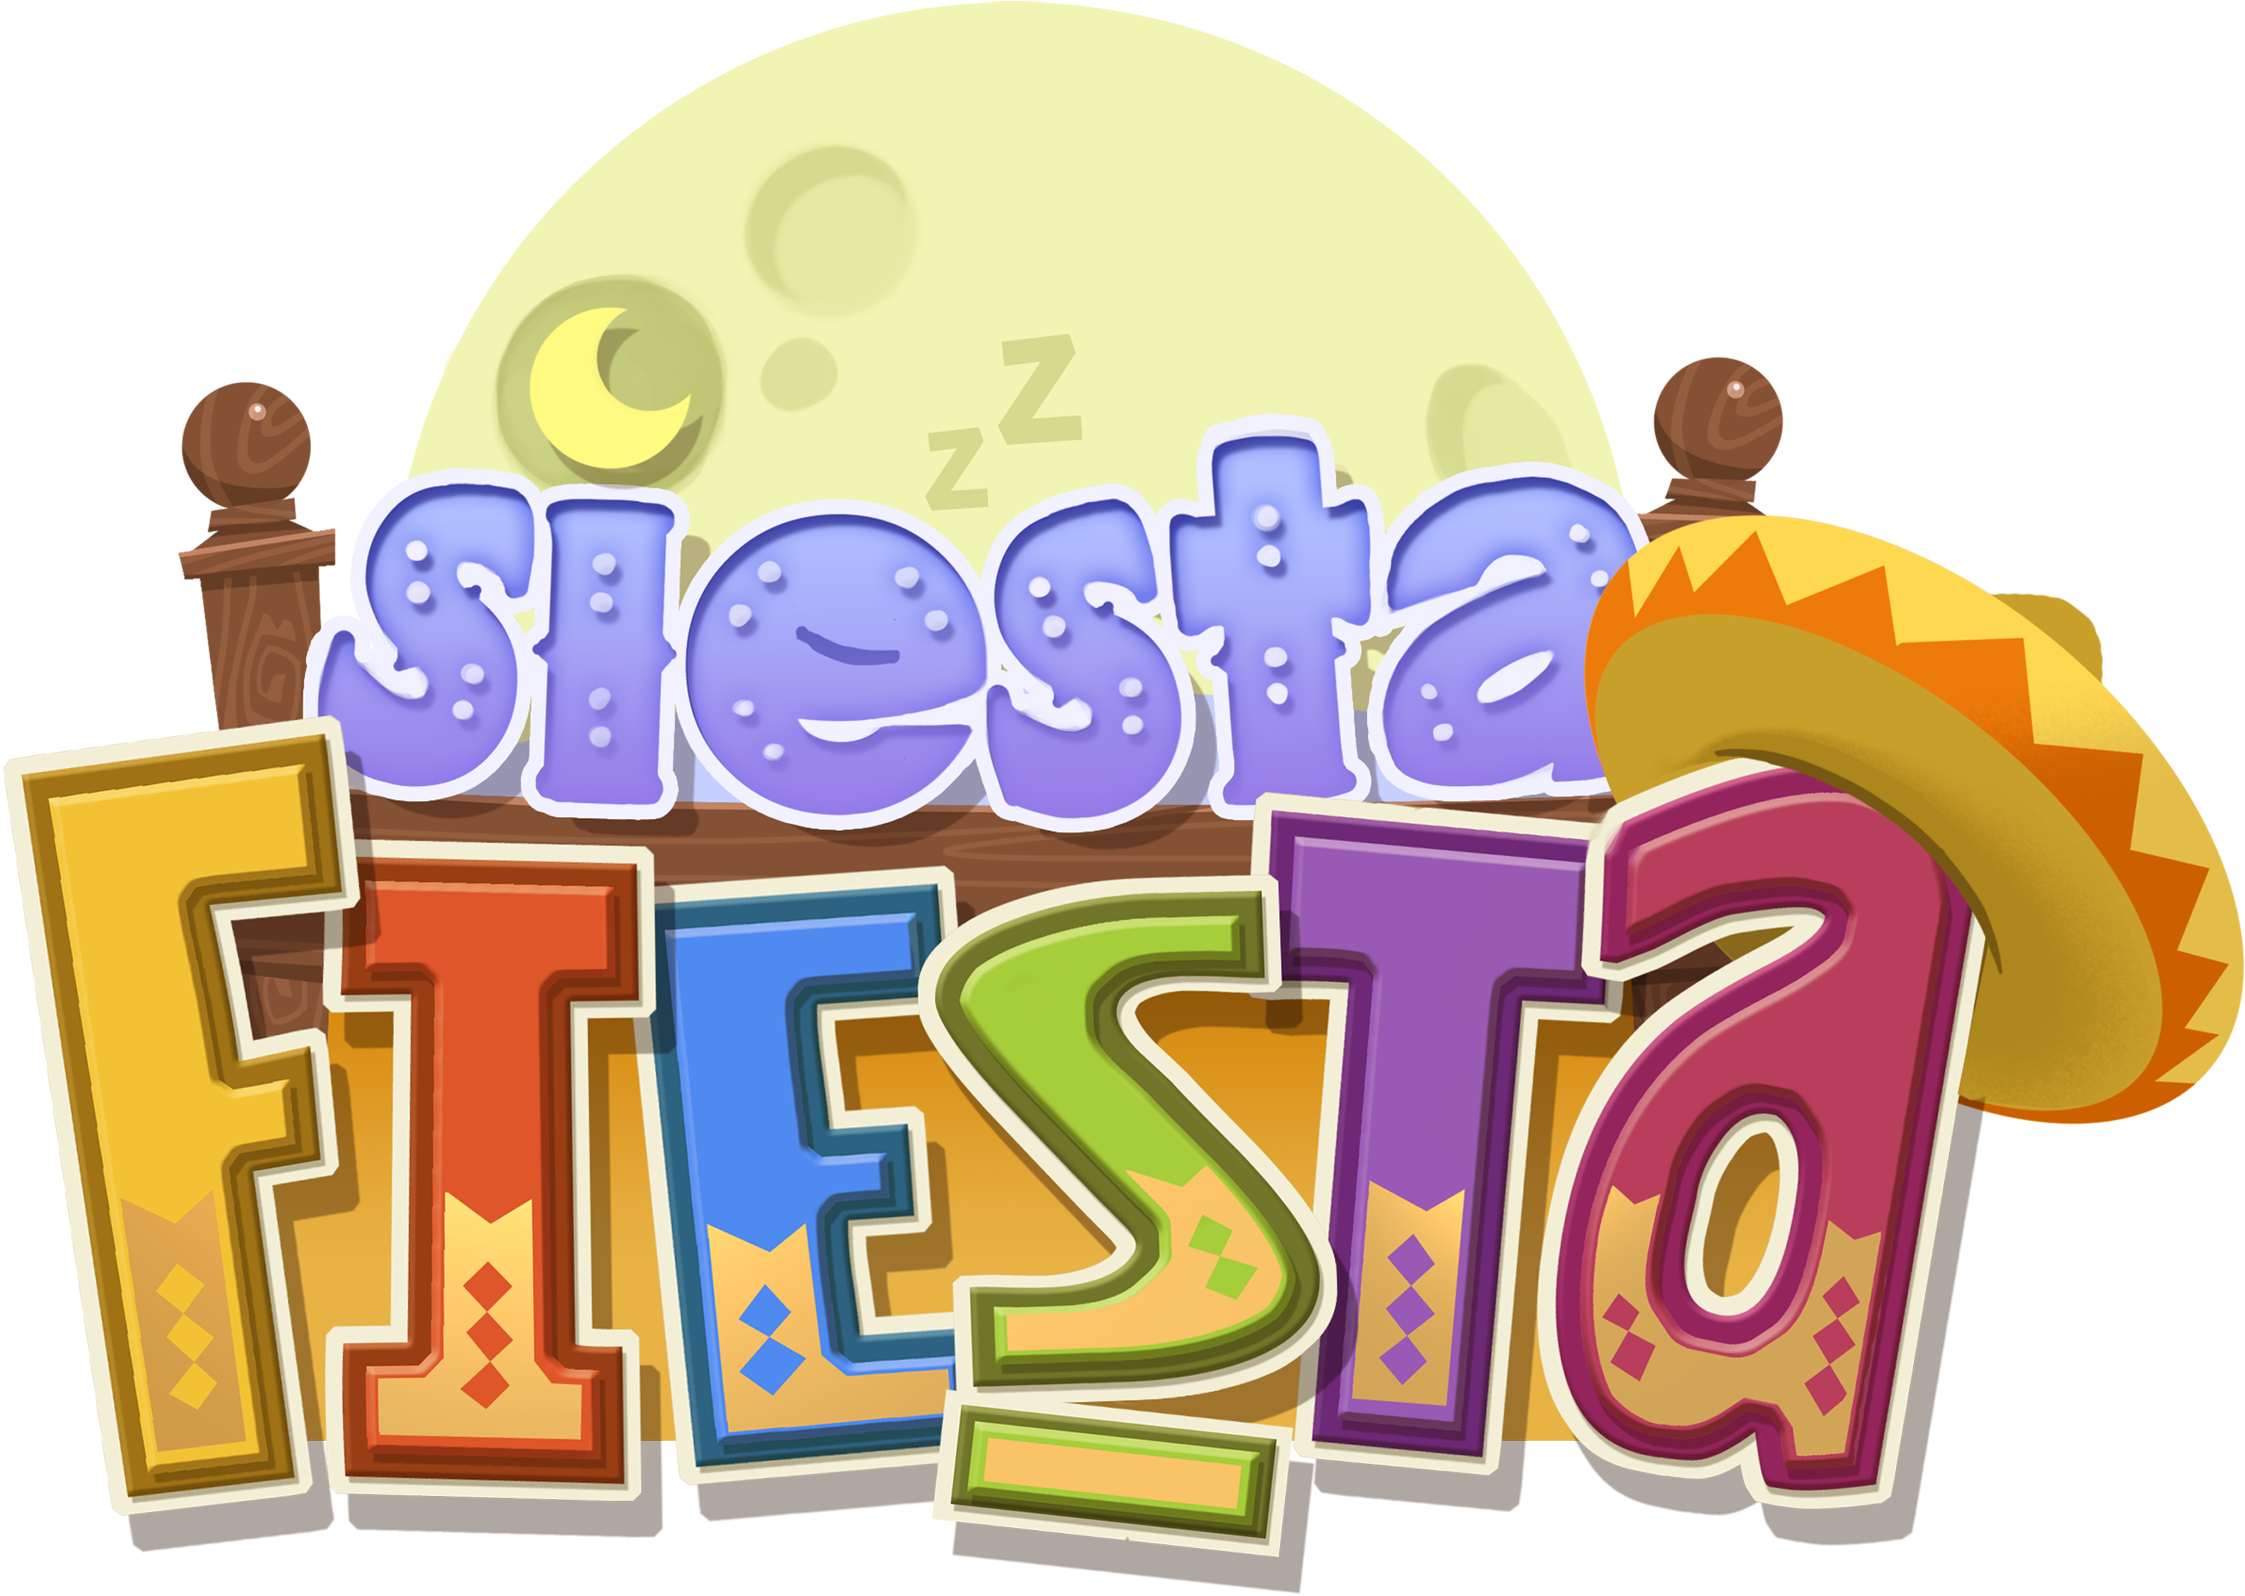 Siesta Fiesta 3ds (2362x2362)